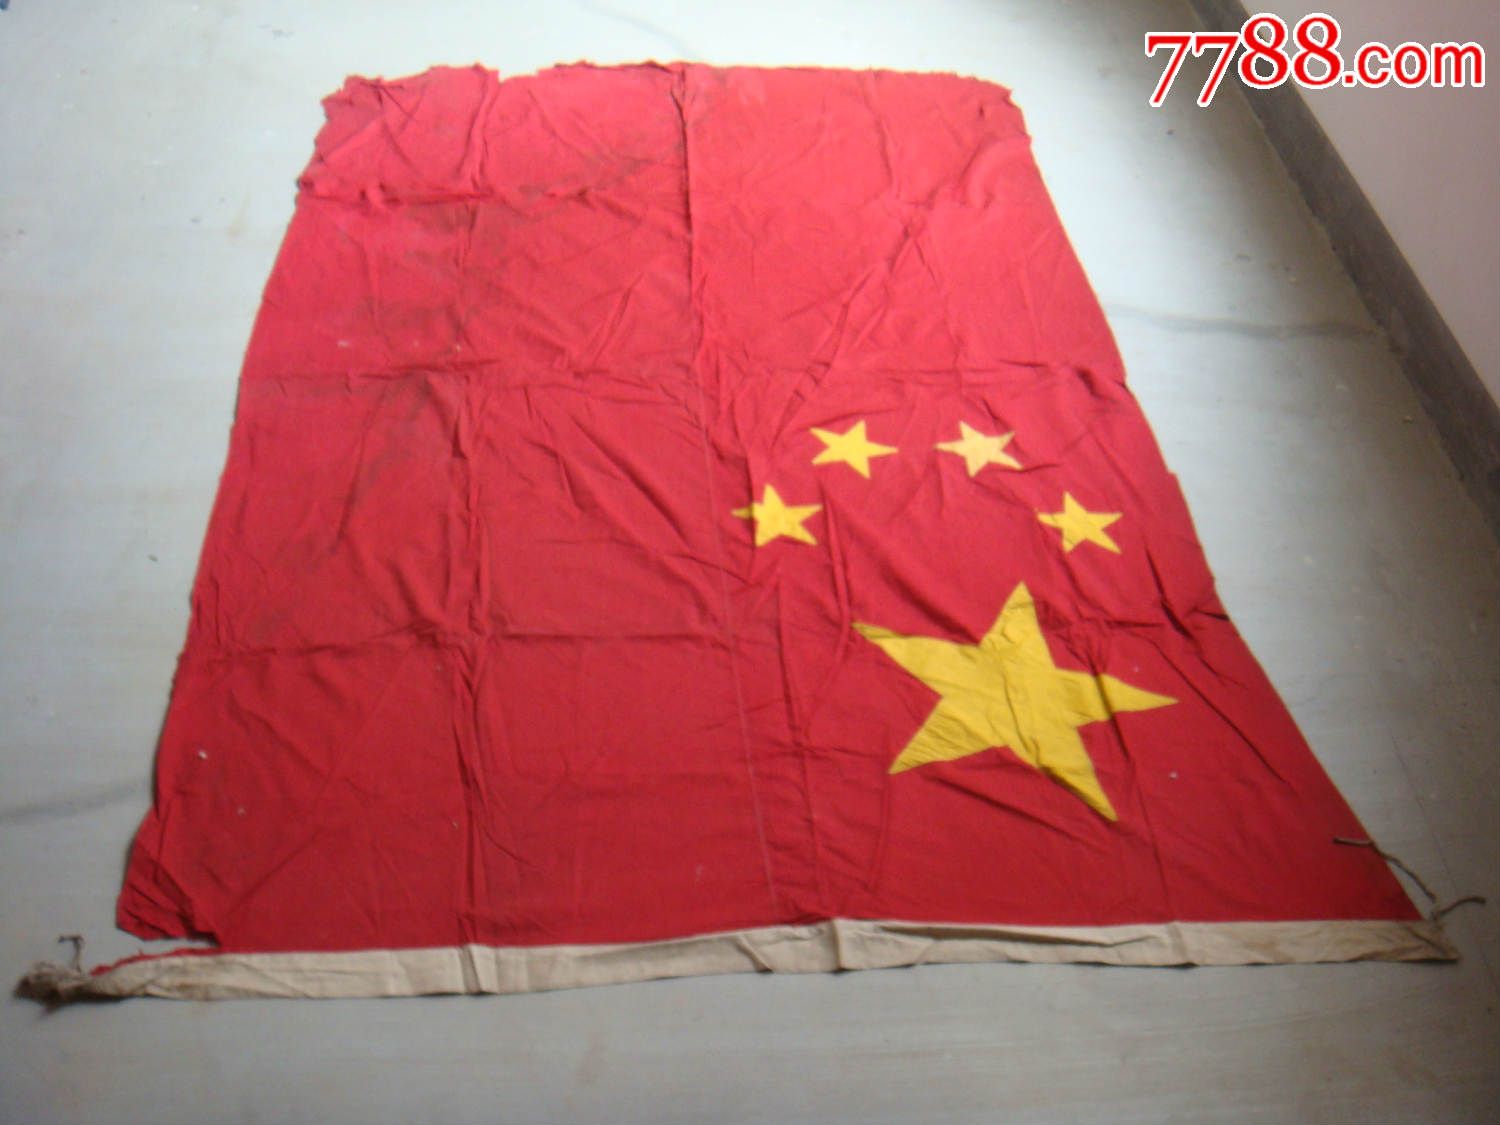 新中国最早的国旗图片